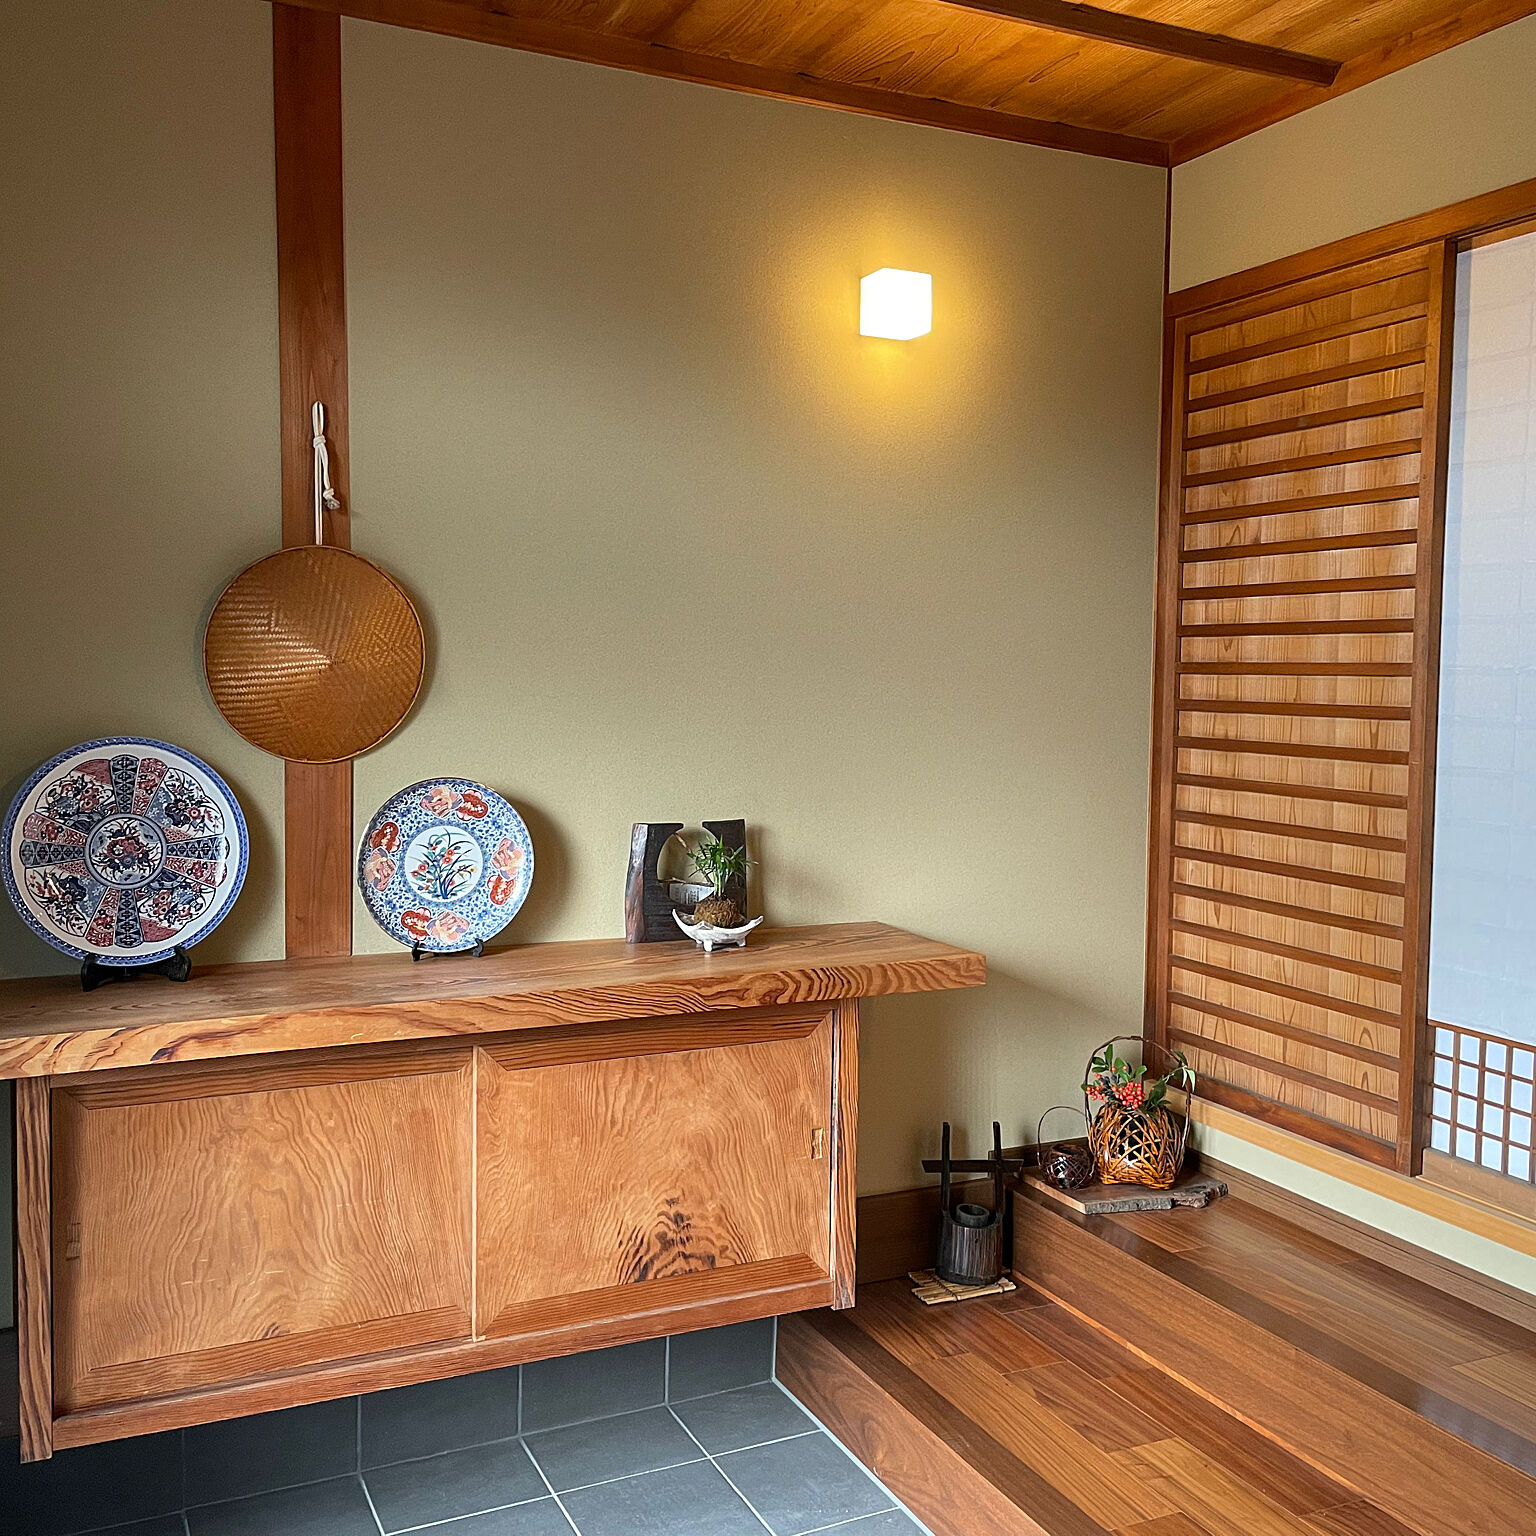 平屋の暖かな玄関に佇むアンティークな松の木の下駄箱。国産木材のレトロな風合いが、玄関ホールに心地よい木のぬくもりを届けています